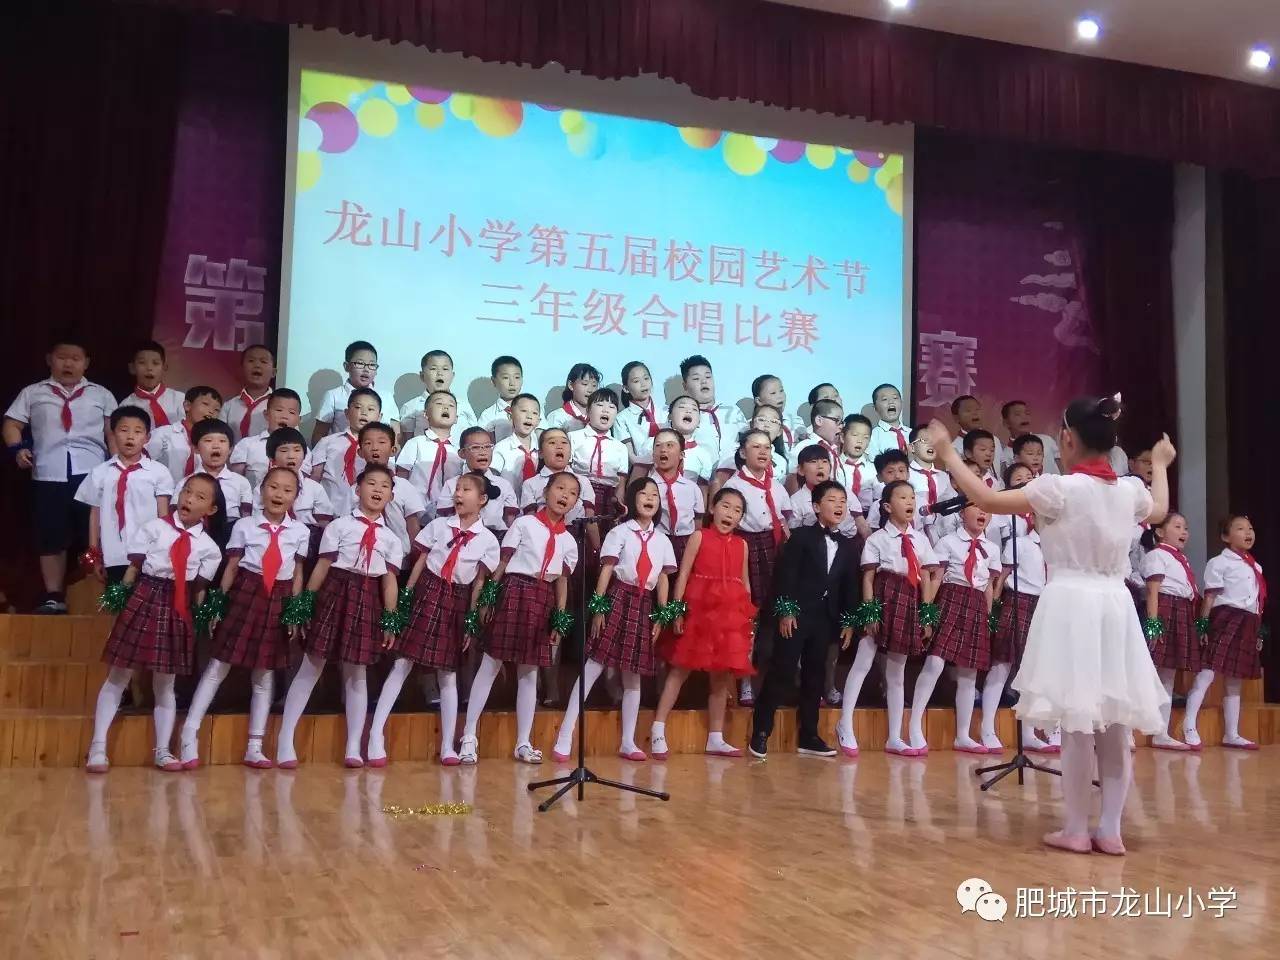 龙山小学举办校园艺术节"唱响童年"合唱比赛